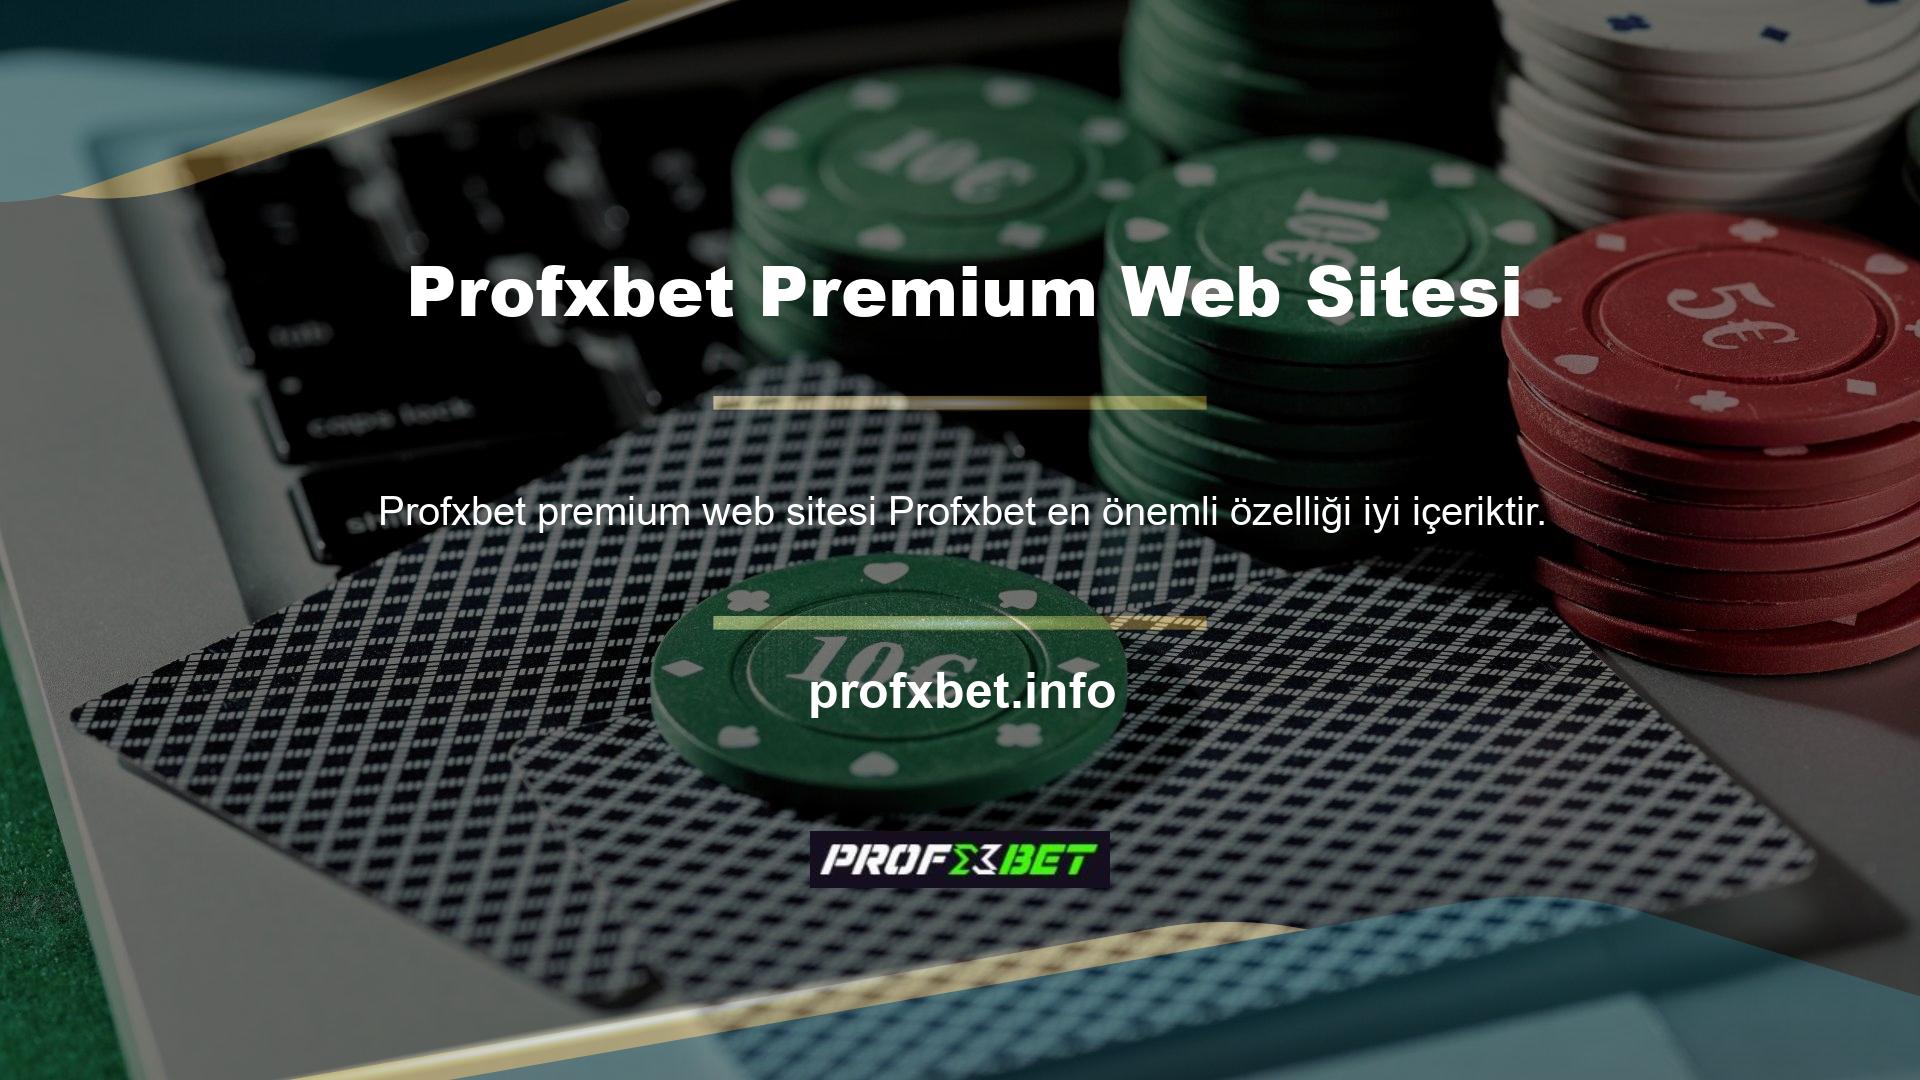 Profxbet web sitesi oldukça basit bir şekilde içerik oluşturmaktadır